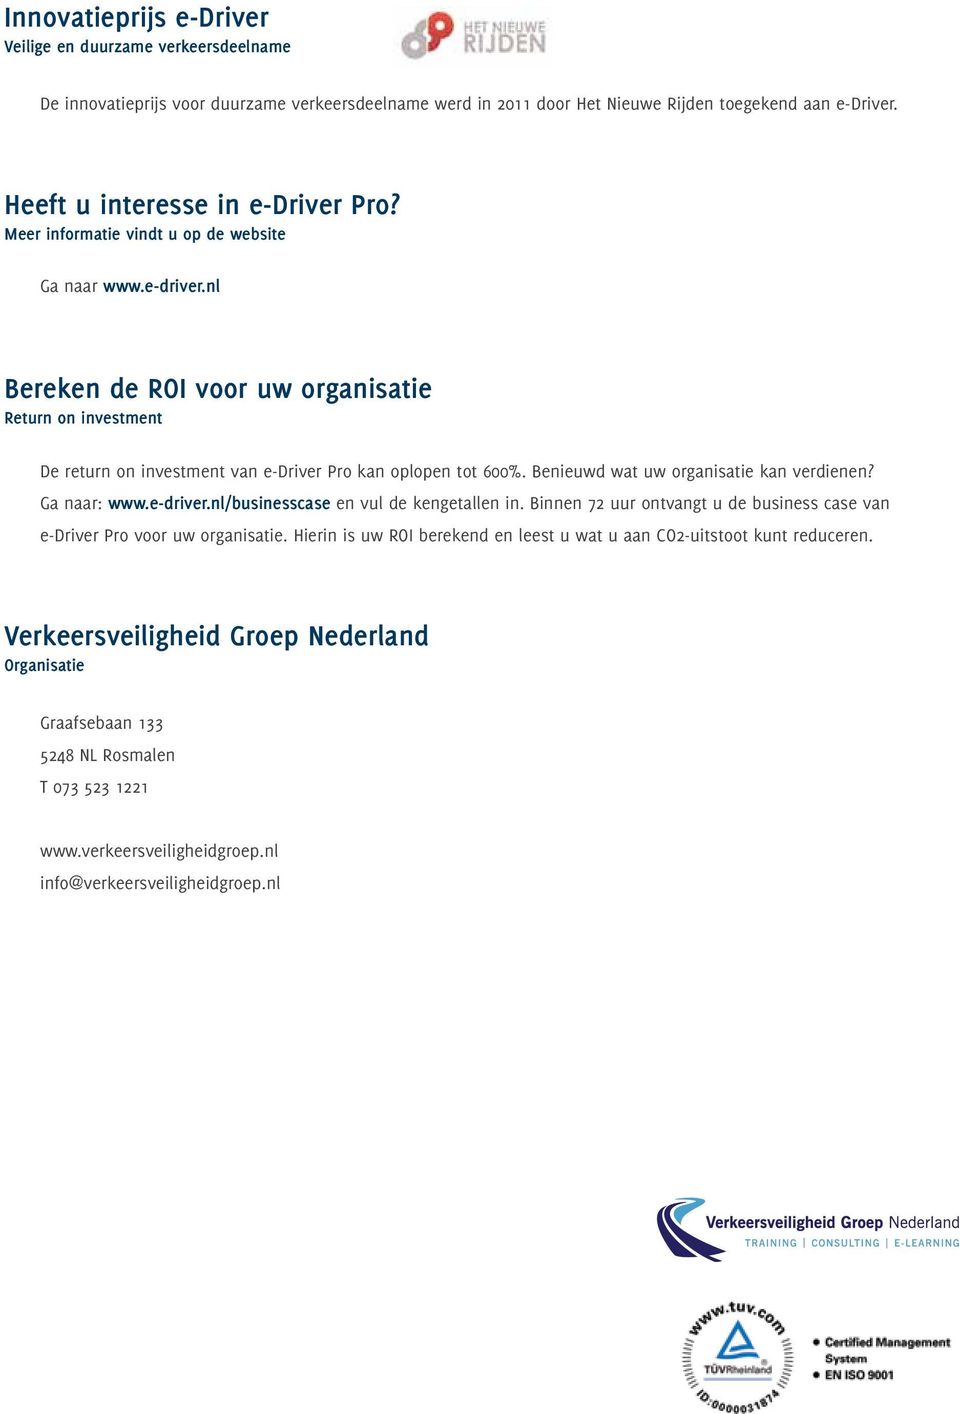 Benieuwd wat uw organisatie kan verdienen? Ga naar: www.e-driver.nl/businesscase en vul de kengetallen in. Binnen 72 uur ontvangt u de business case van e-driver Pro voor uw organisatie.